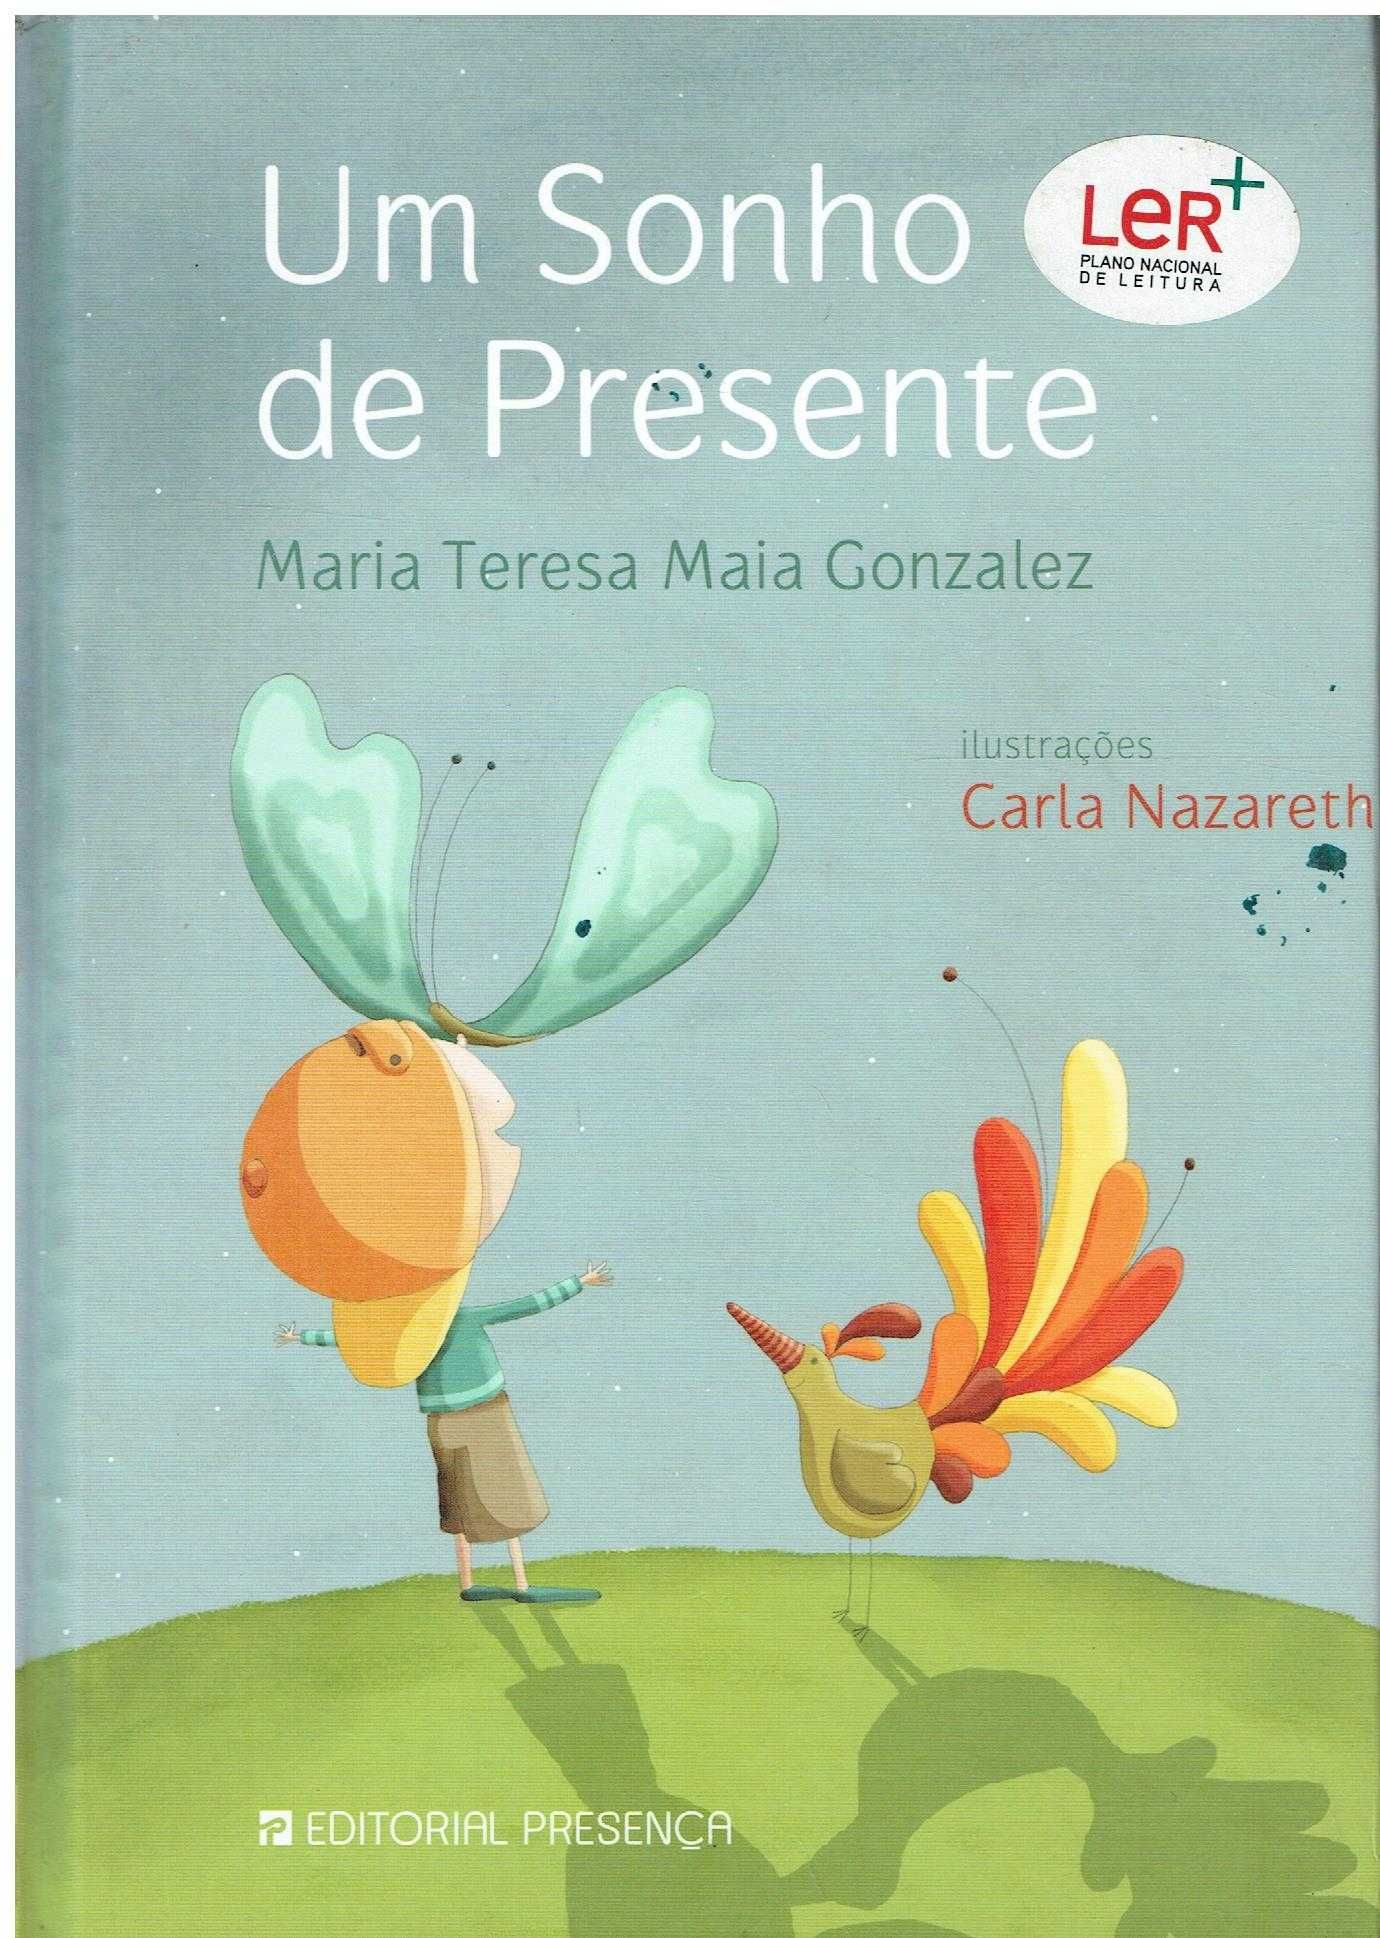 7826

Um Sonho de Presente
de Maria Teresa Maia Gonzalez